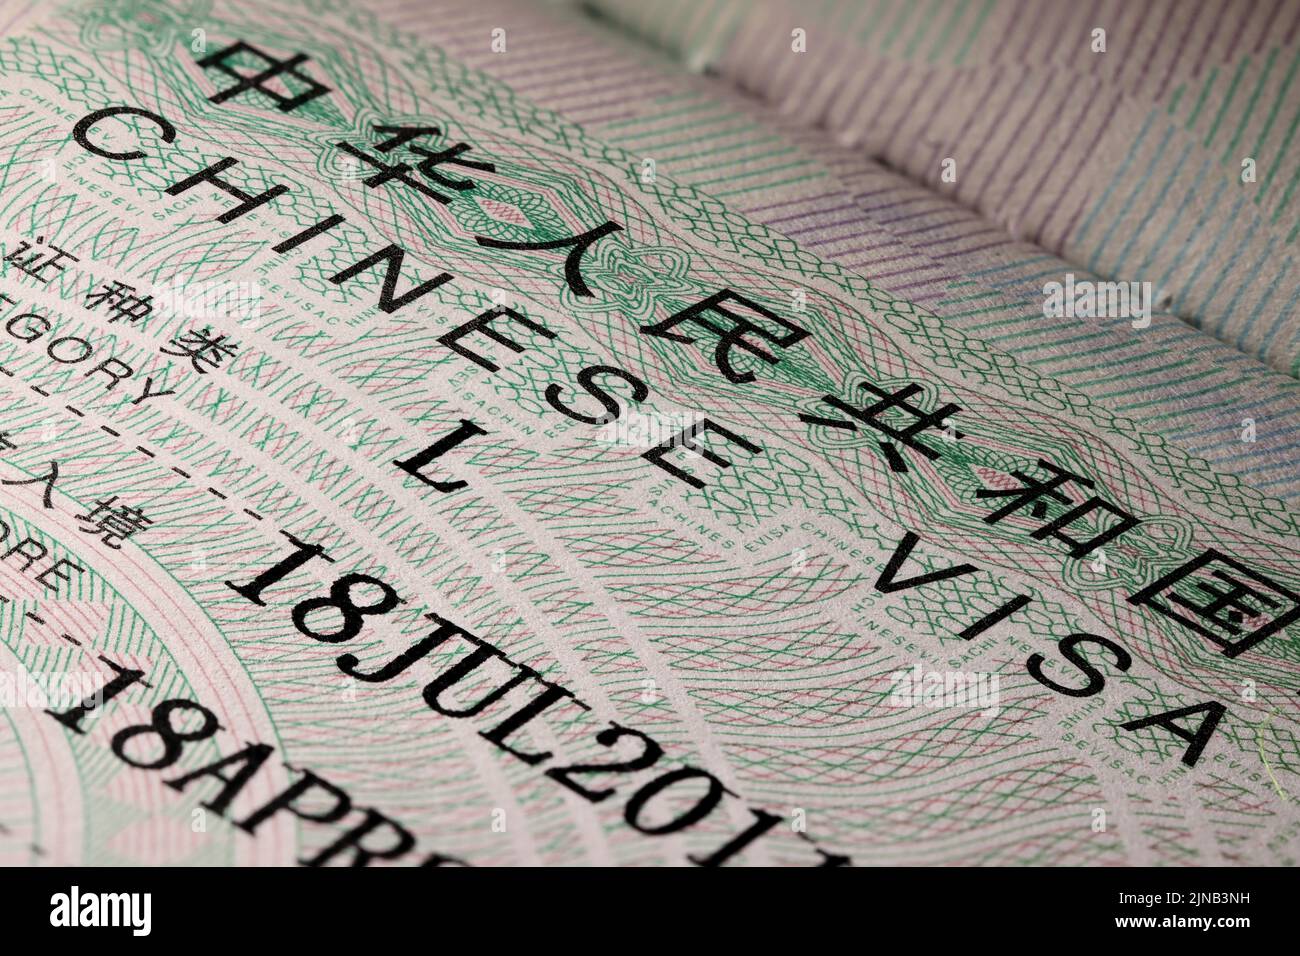 Chinese visa sticker in passport Stock Photo